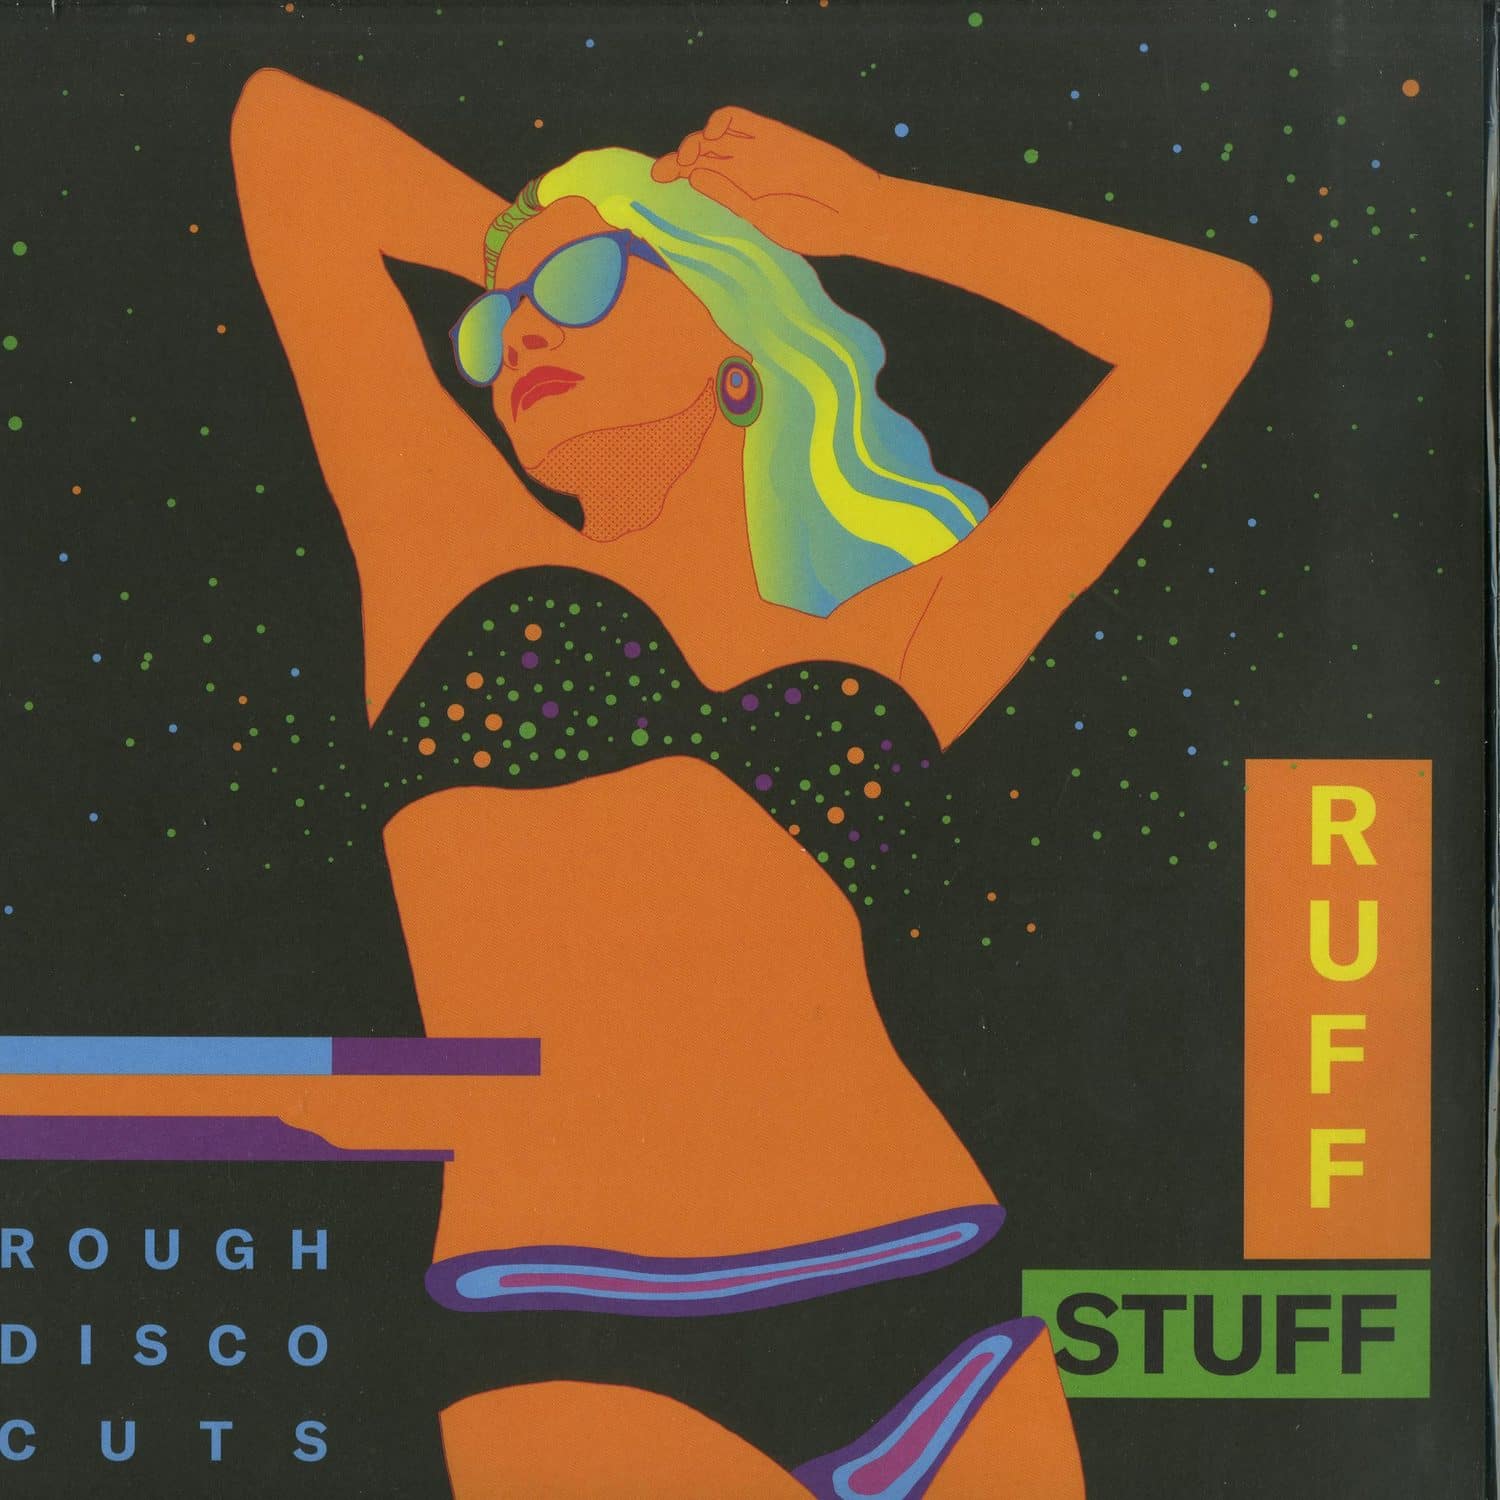 Ruff Stuff - ROUGH DISCO CUTS EP